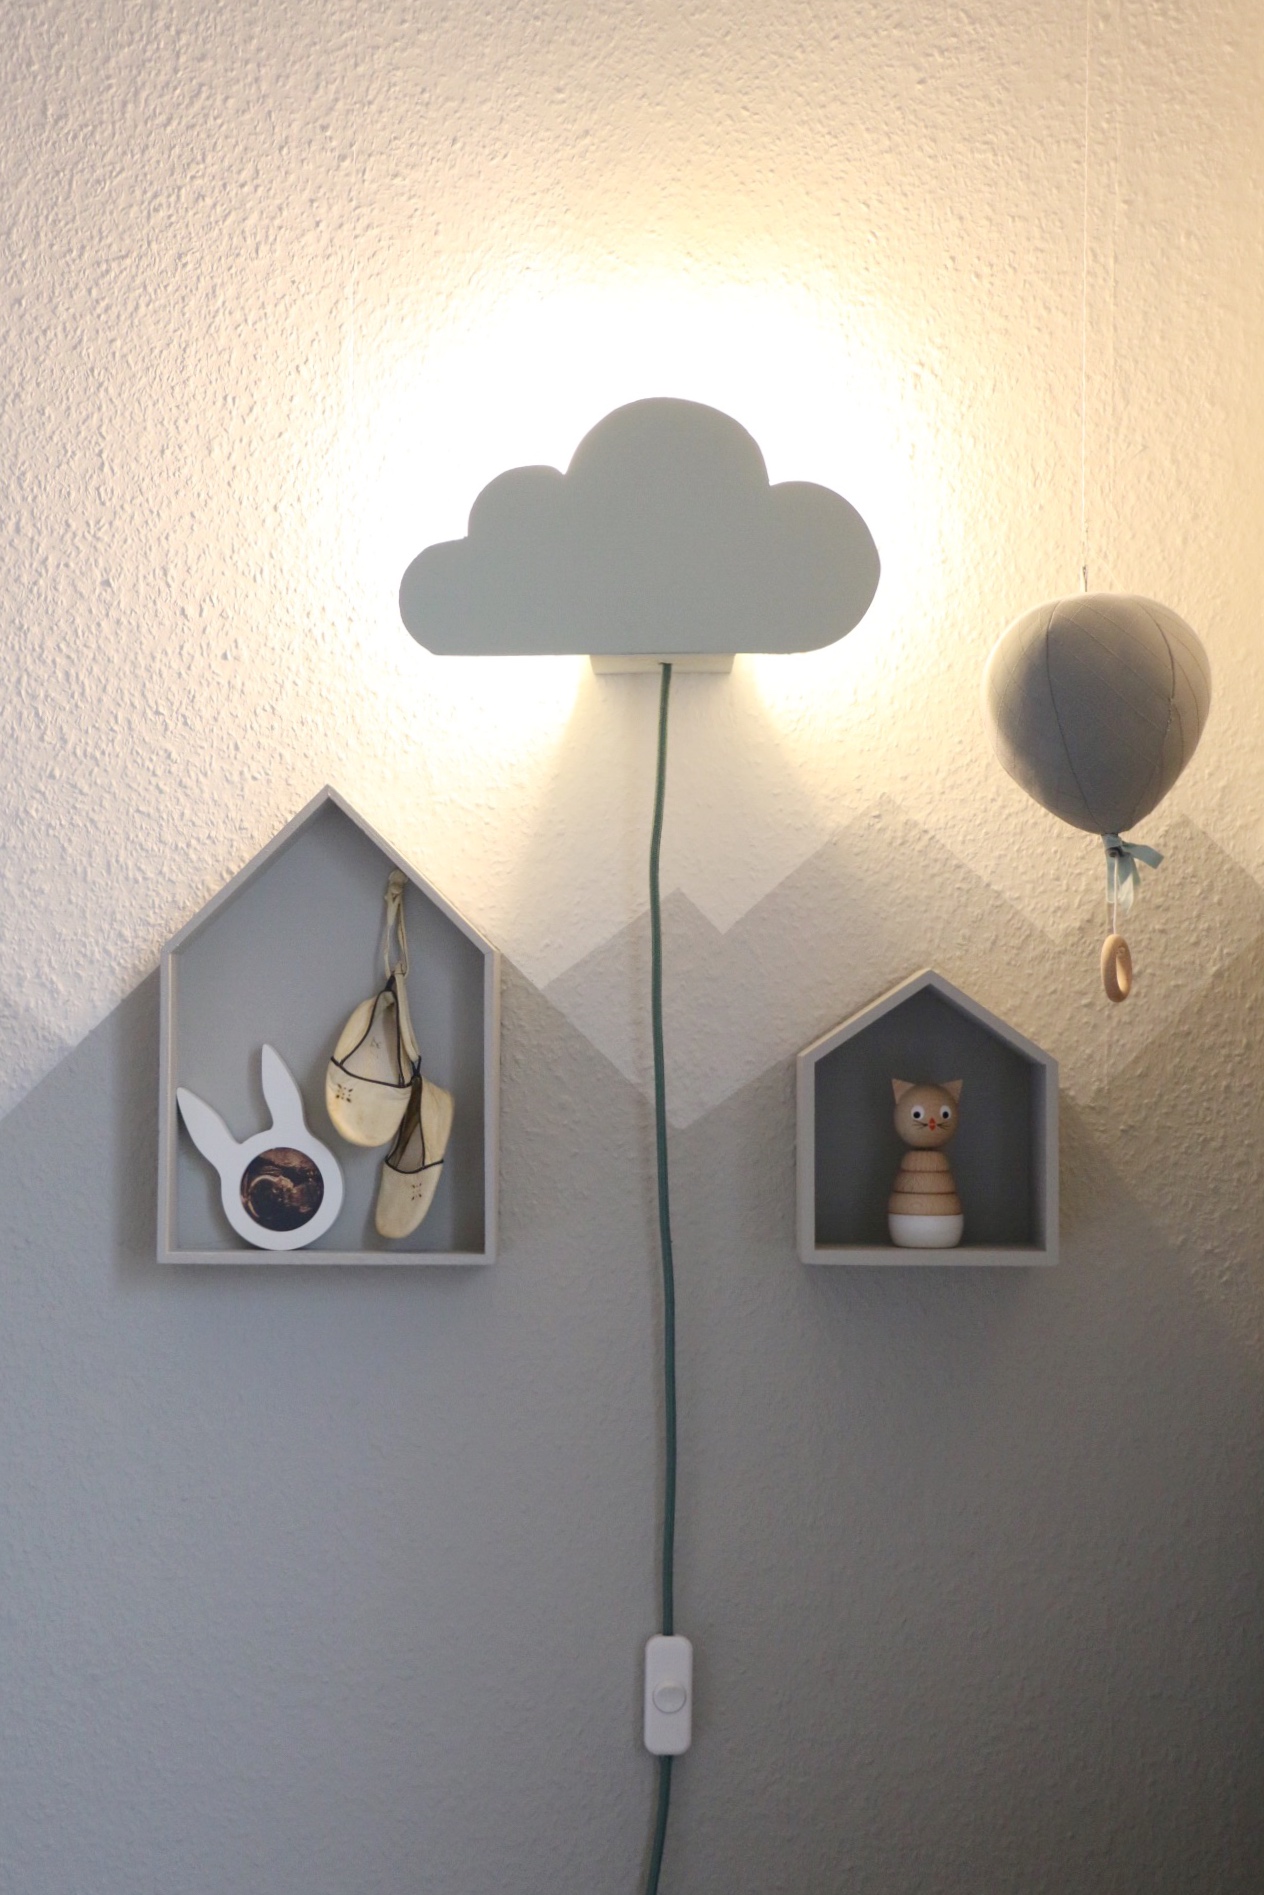 DIY Cloud Lamp - Wolkenleuchte für die Wickelecke by eat blog love